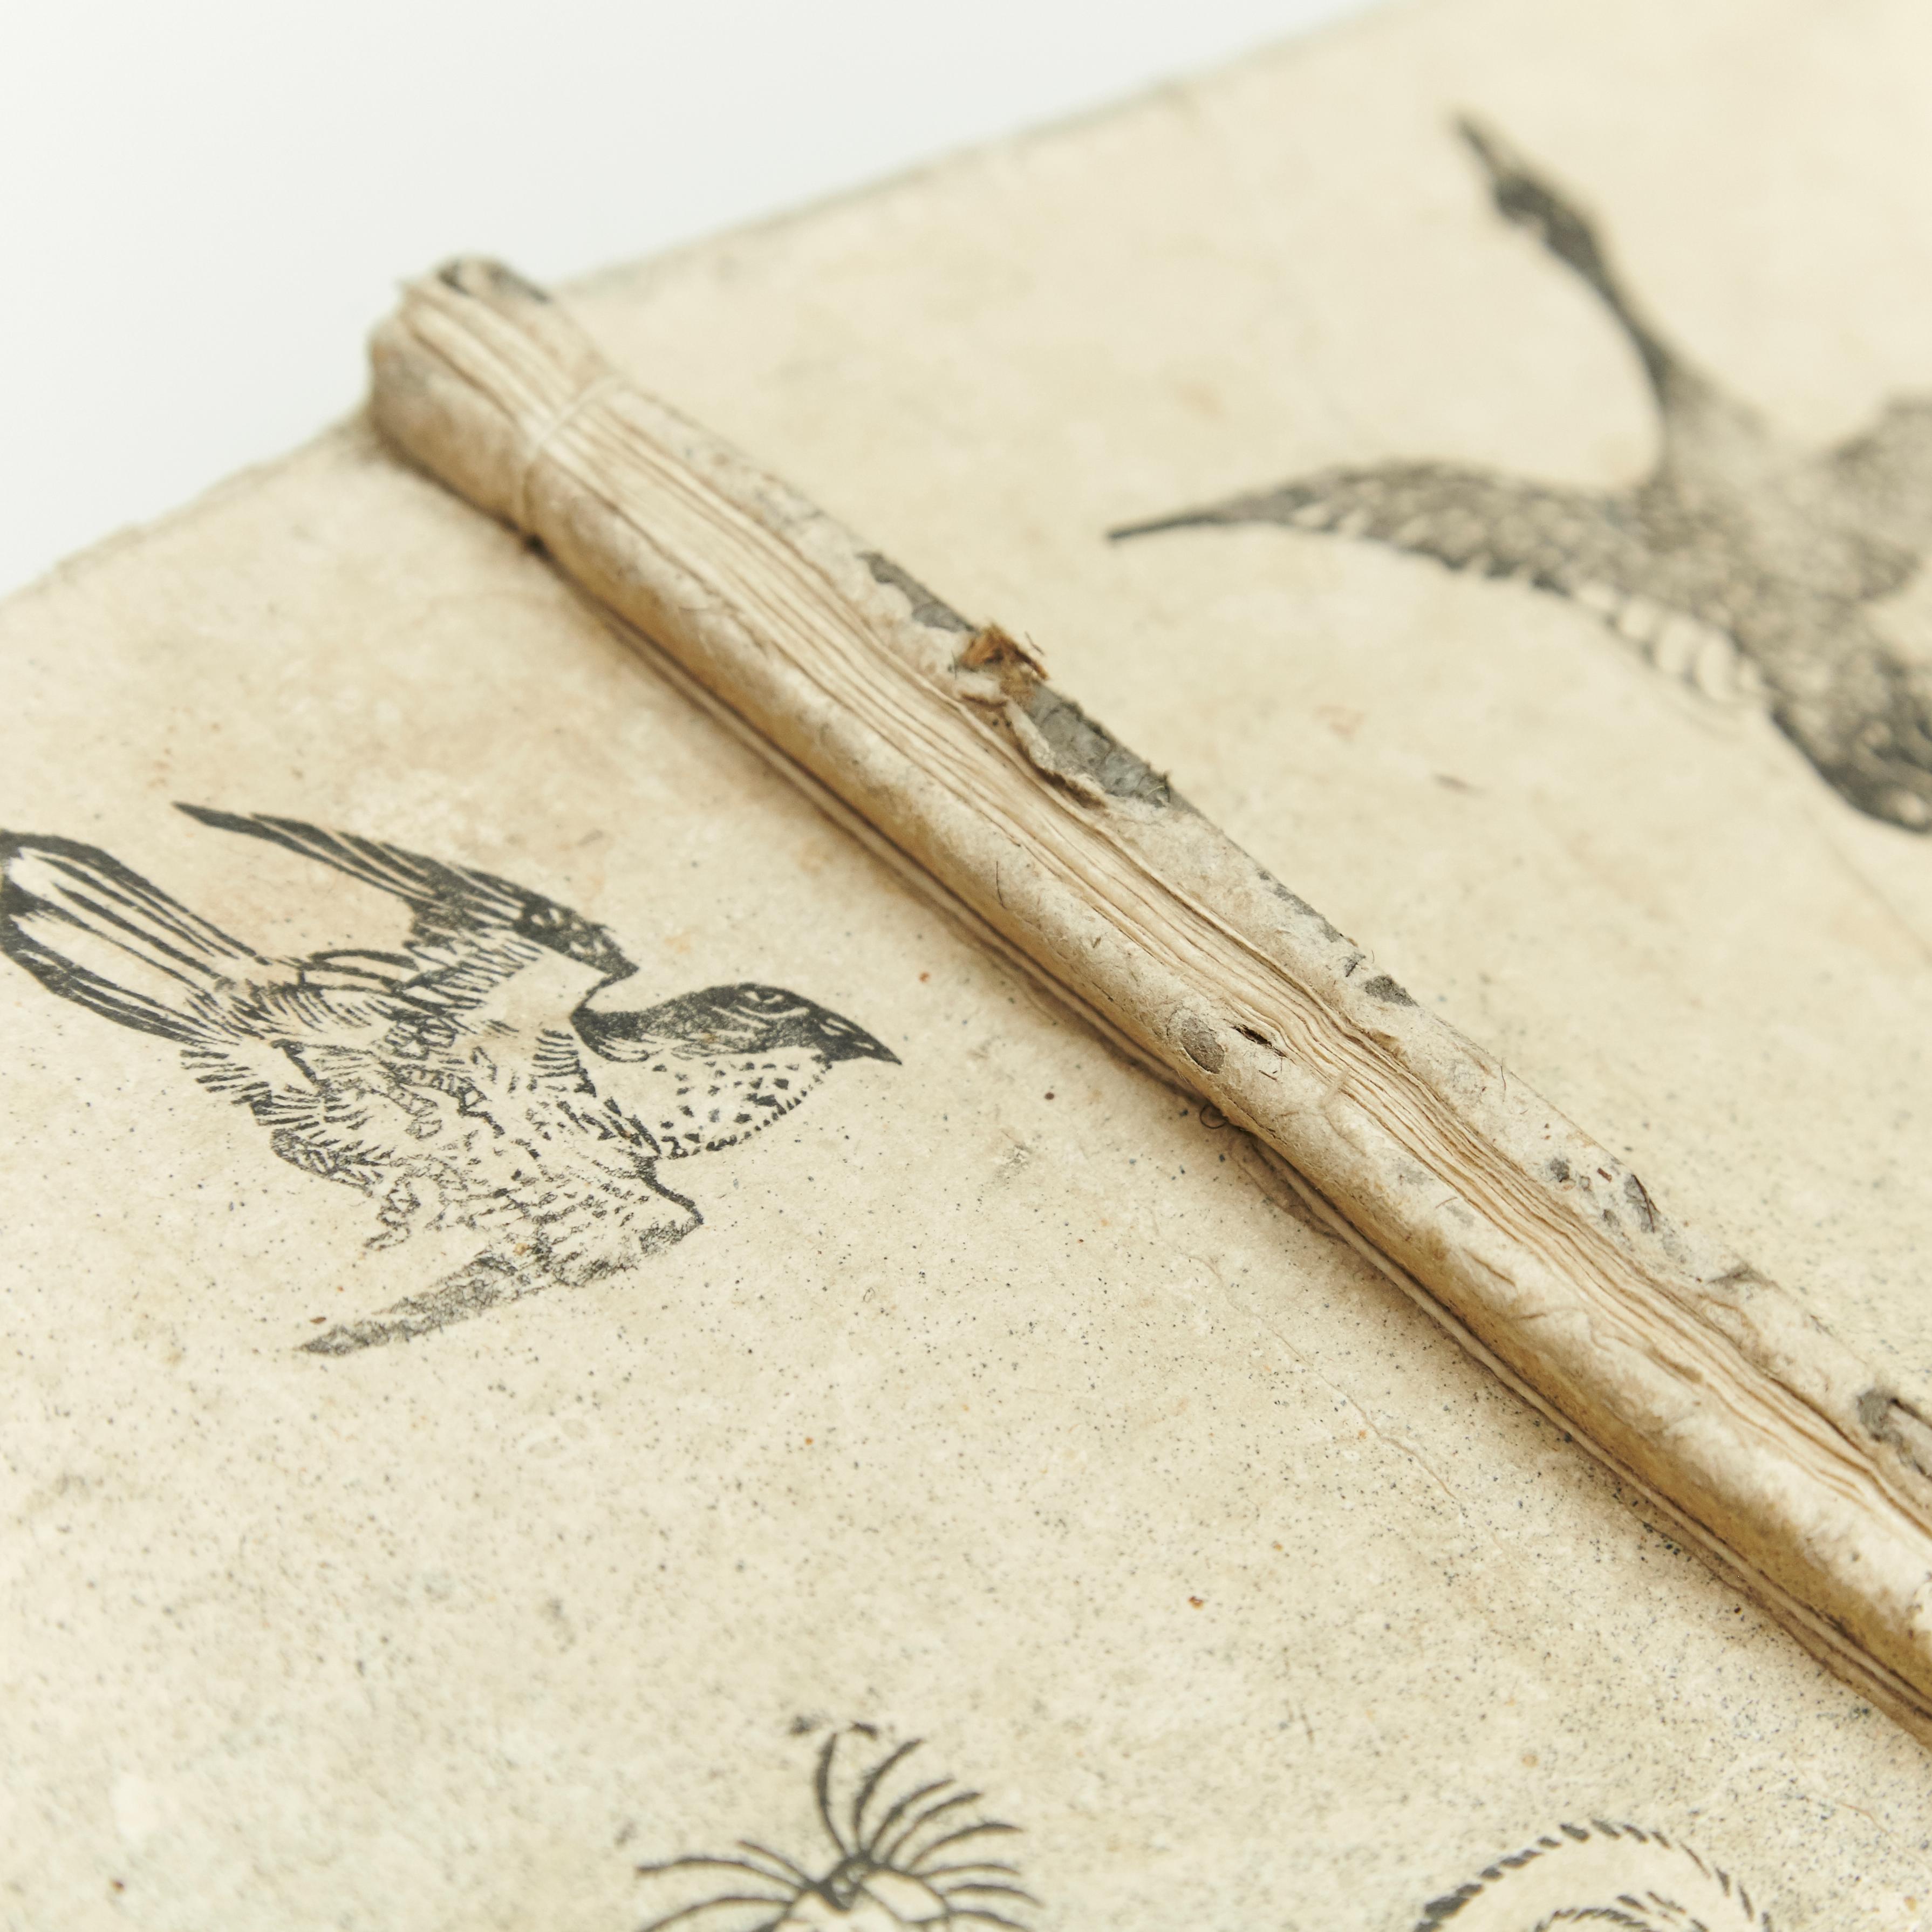 Antique Japanese Epic Novel Book Edo Period, circa 1819 1